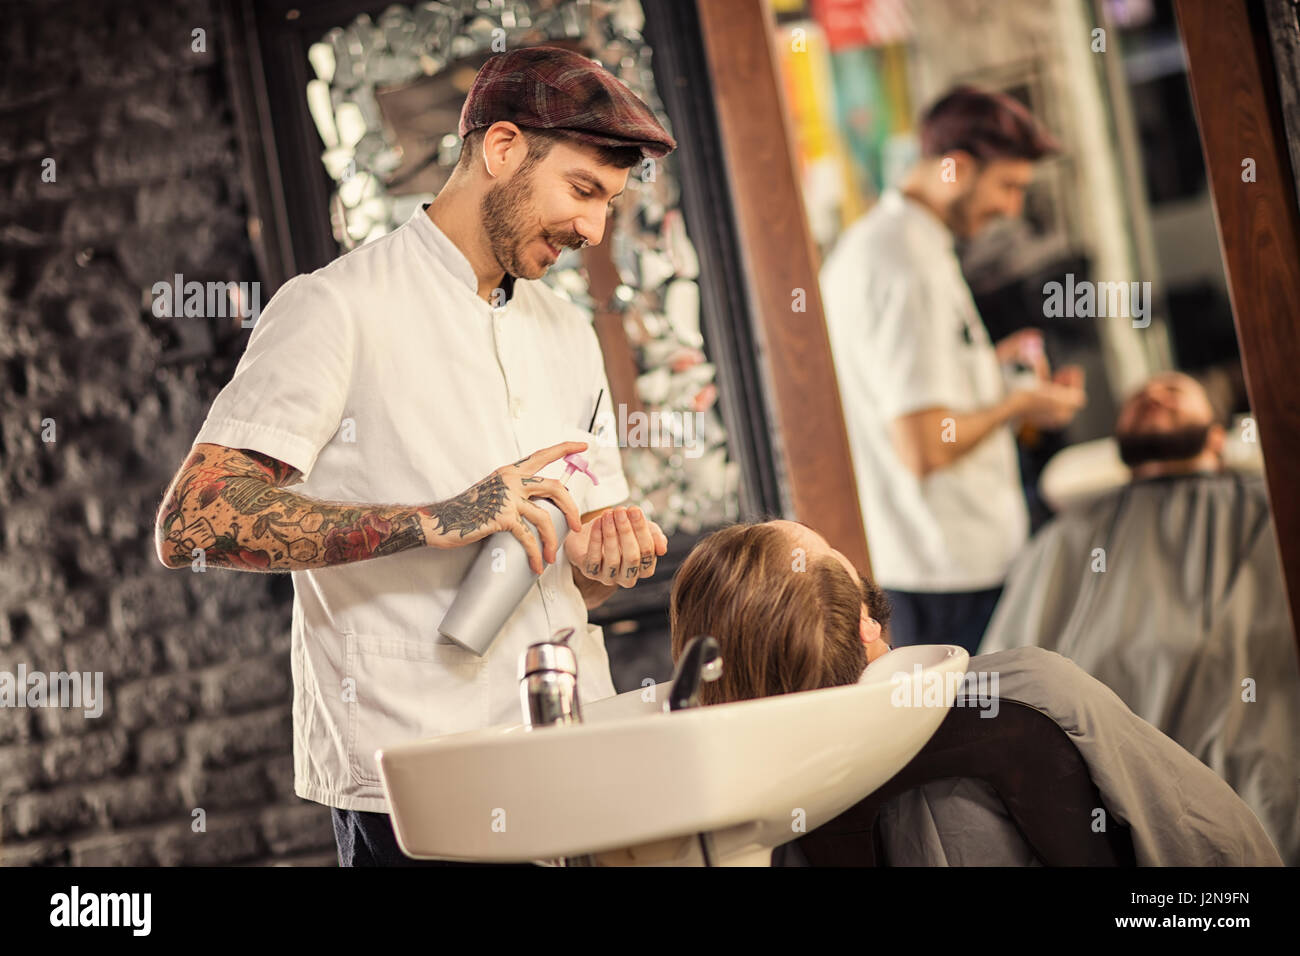 Friseur waschen Kopf der Mann mit Bart im barbershop Stockfoto